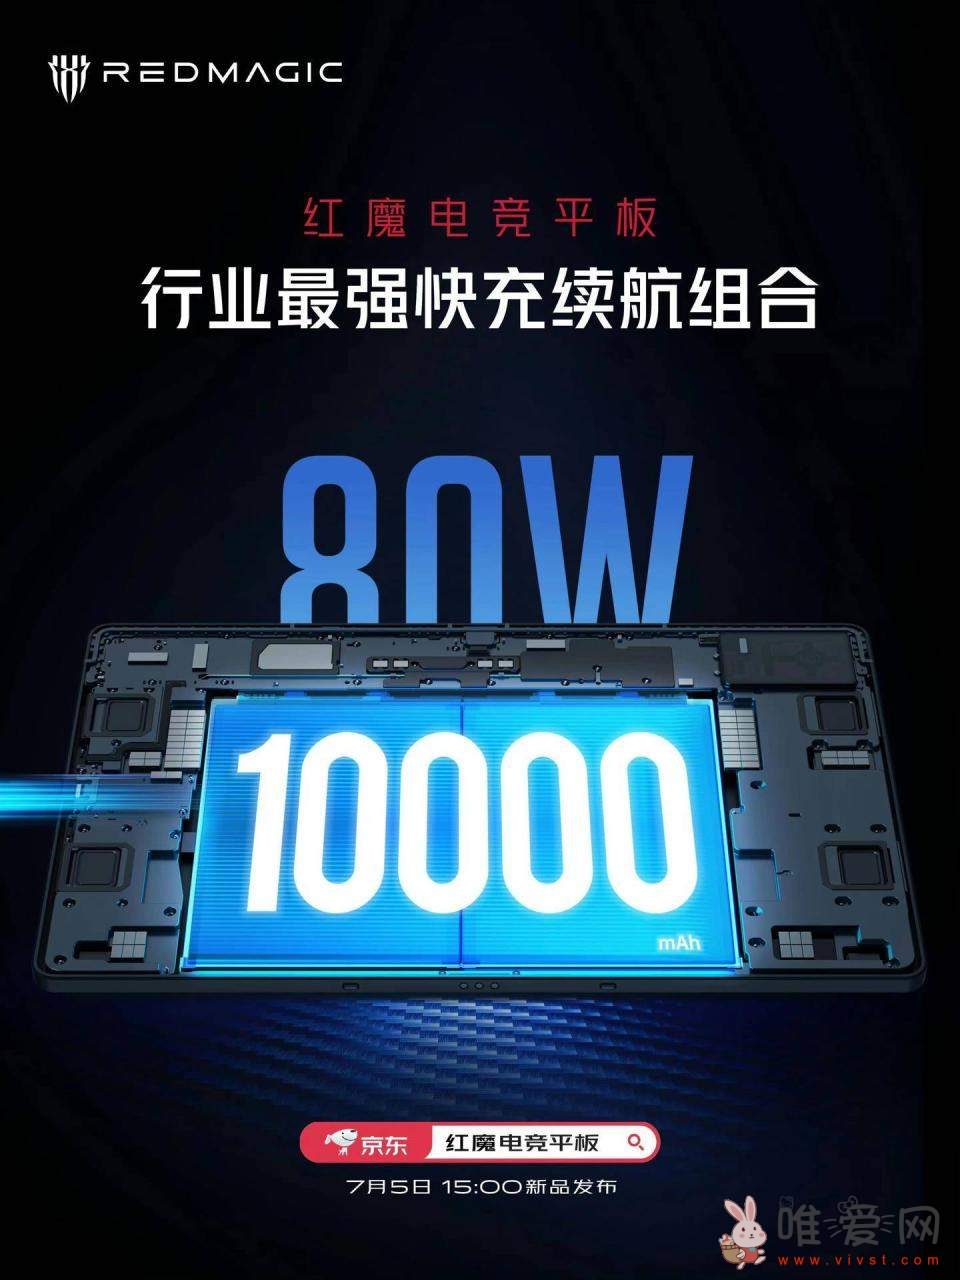 红魔新款电竞平板电脑将内置10000mAh电池容量：55分钟可充满电！